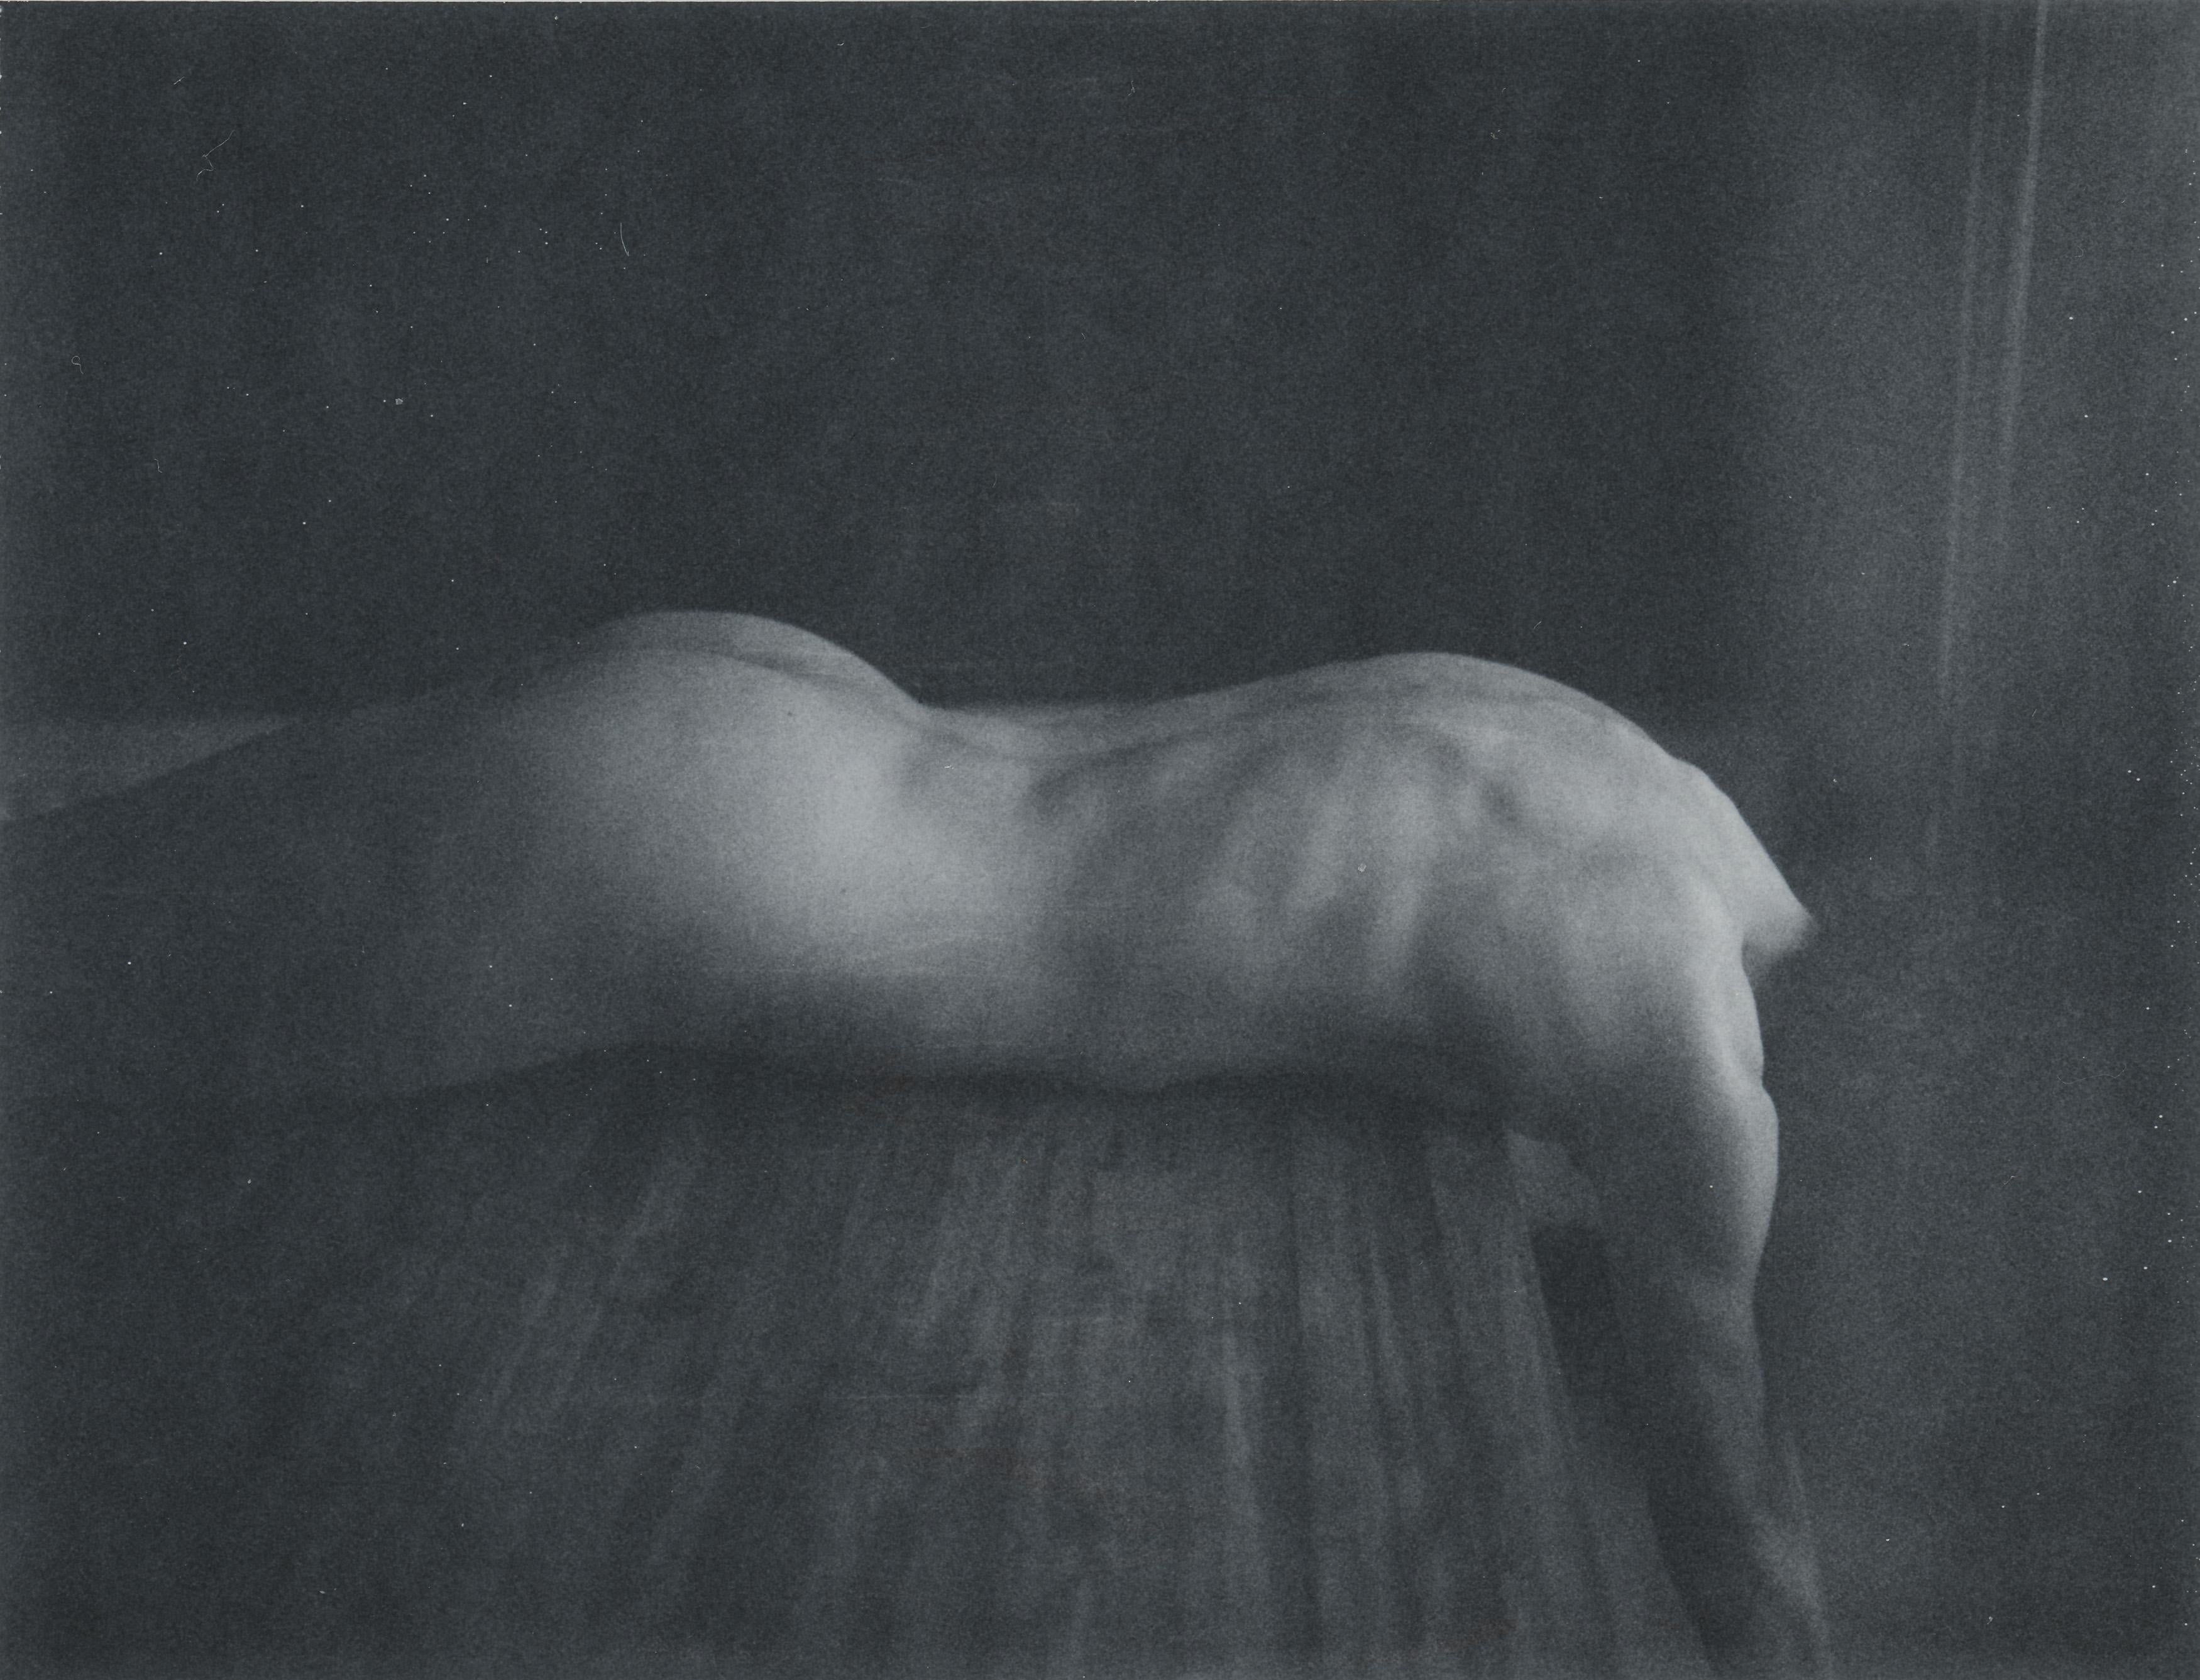 Kirsten Thys van den Audenaerde Nude Photograph - Noise - Contemporary, Nude, Women, Polaroid, 21st Century